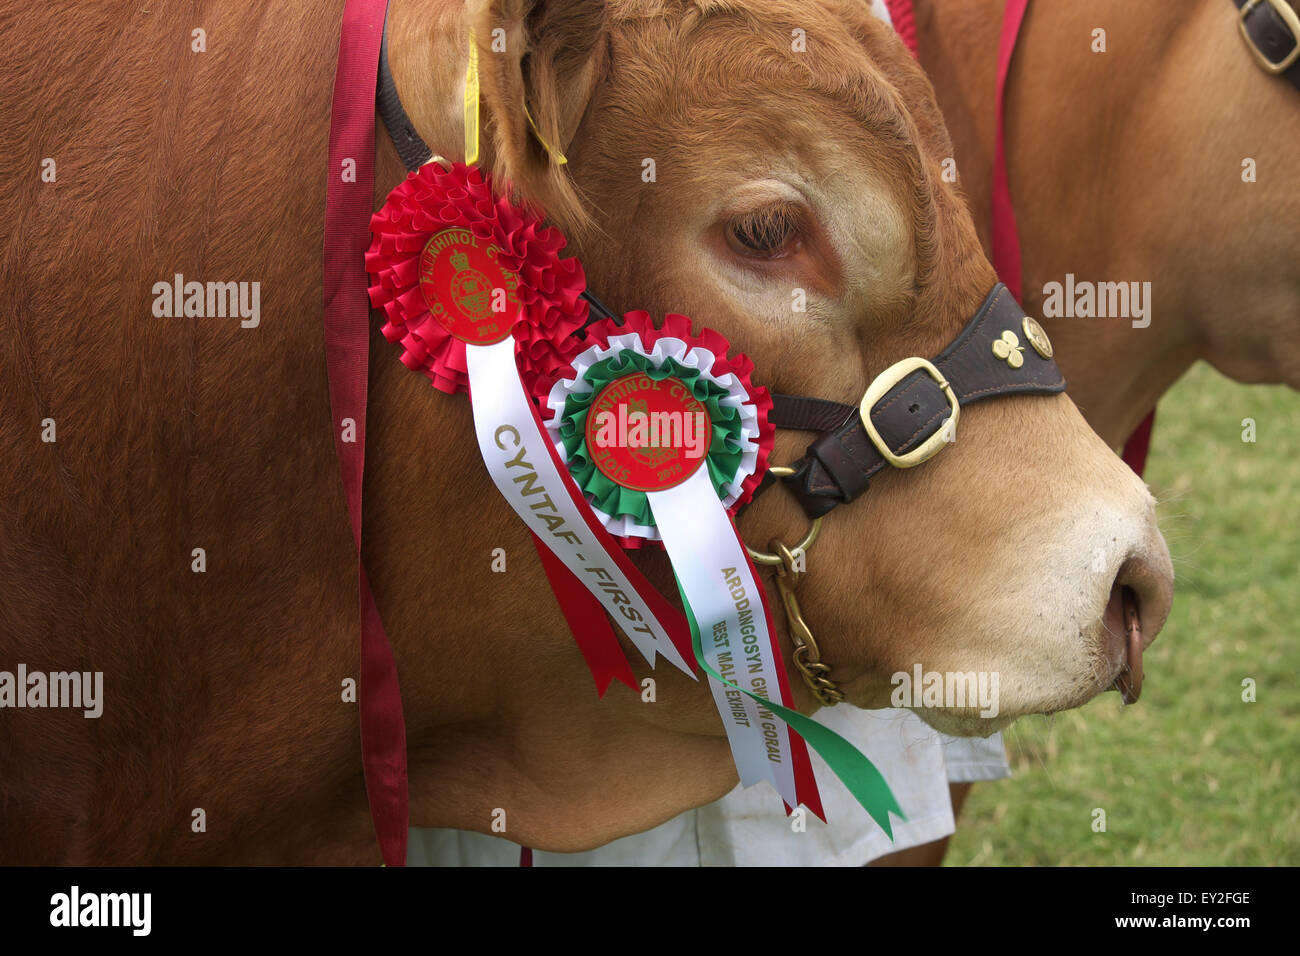 Royal Welsh Show, Wales UK Luglio, 2015. Primo premio rosette per britannico maschio Limousin bull con rosette in mostra indicano arena. L'evento attrae oltre 7.500 voci di bestiame. Foto Stock